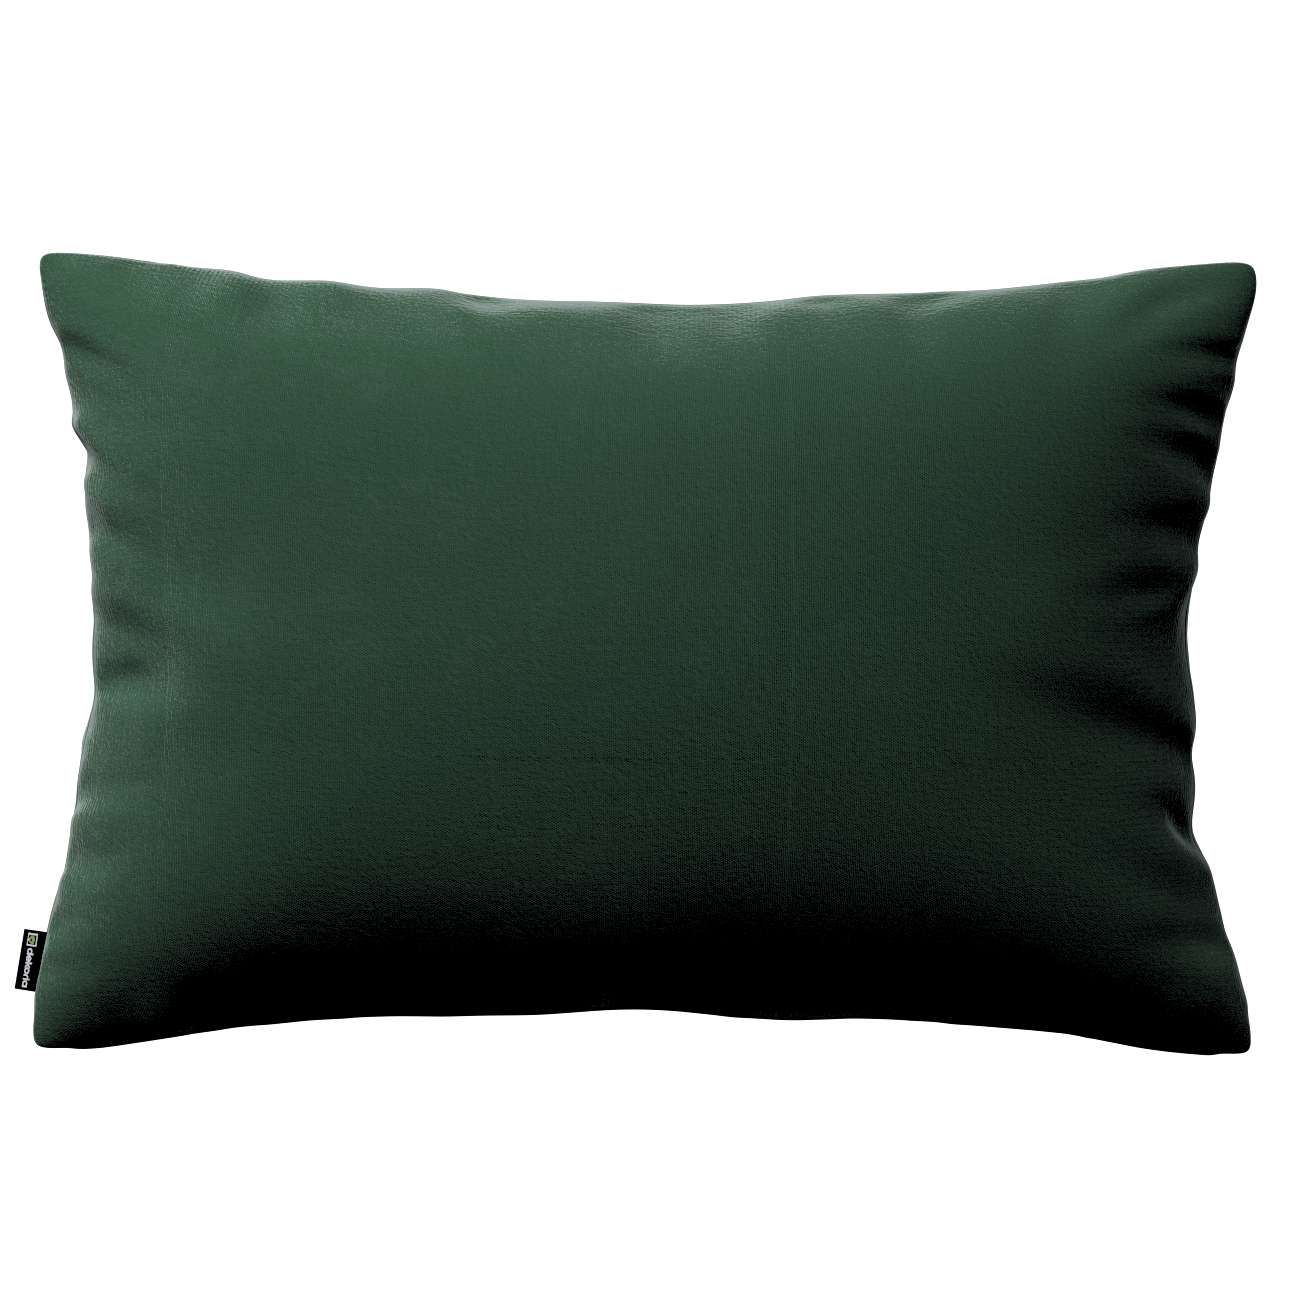 Dekoria Karin - jednoduchá obliečka, 60x40cm, lesná zelená, 60 × 40 cm, Crema, 180-63